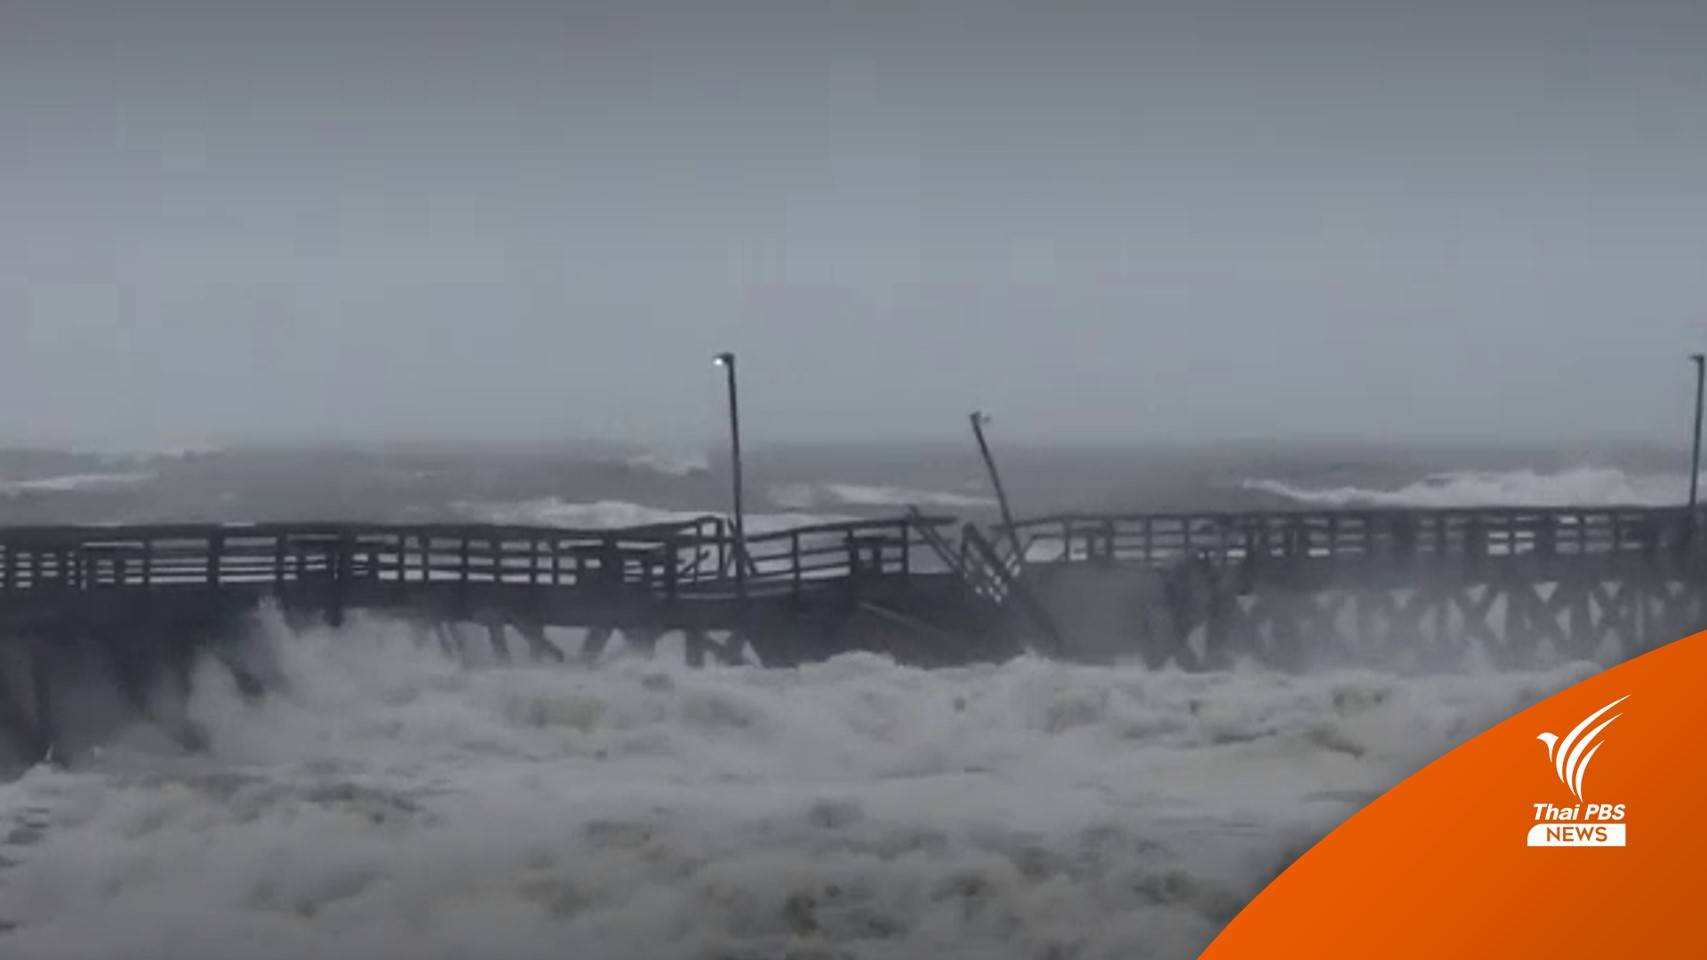 "พายุเฮอริเคนเอียน" ถล่ม ฟลอริดา มีผู้เสียชีวิตอย่างน้อย 45 คน